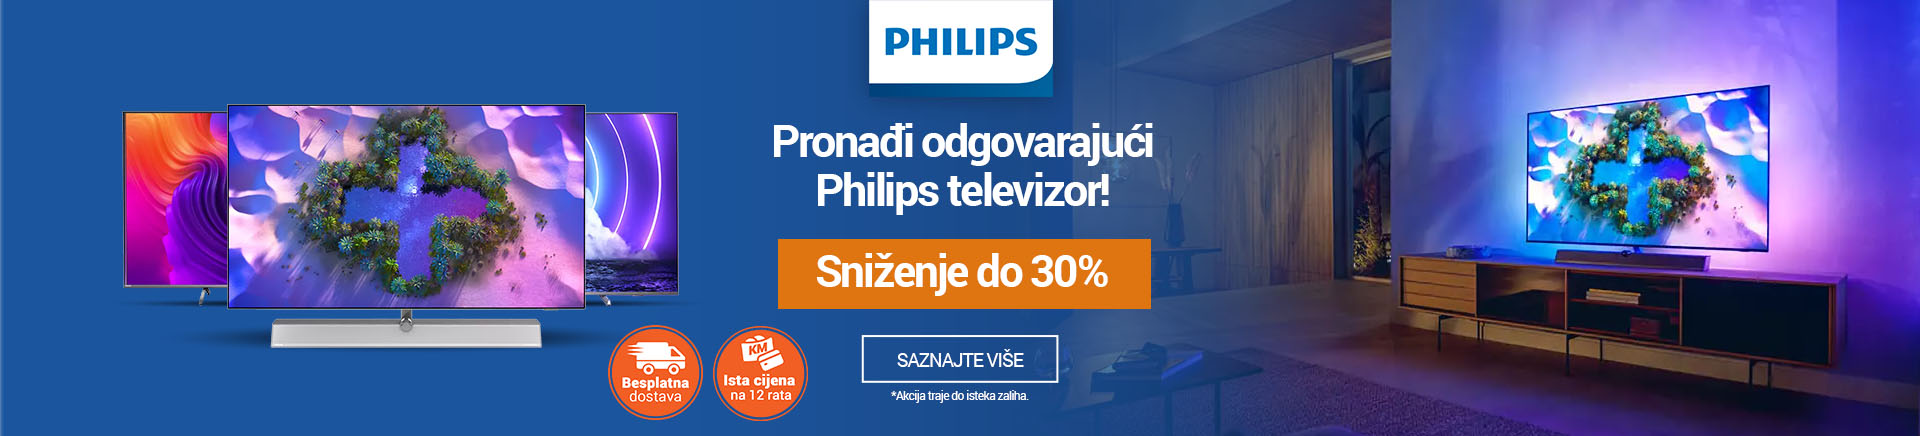 BIH_Pronadi odgovarajuci Philips televizor_MOBILE 380 X 436.jpg